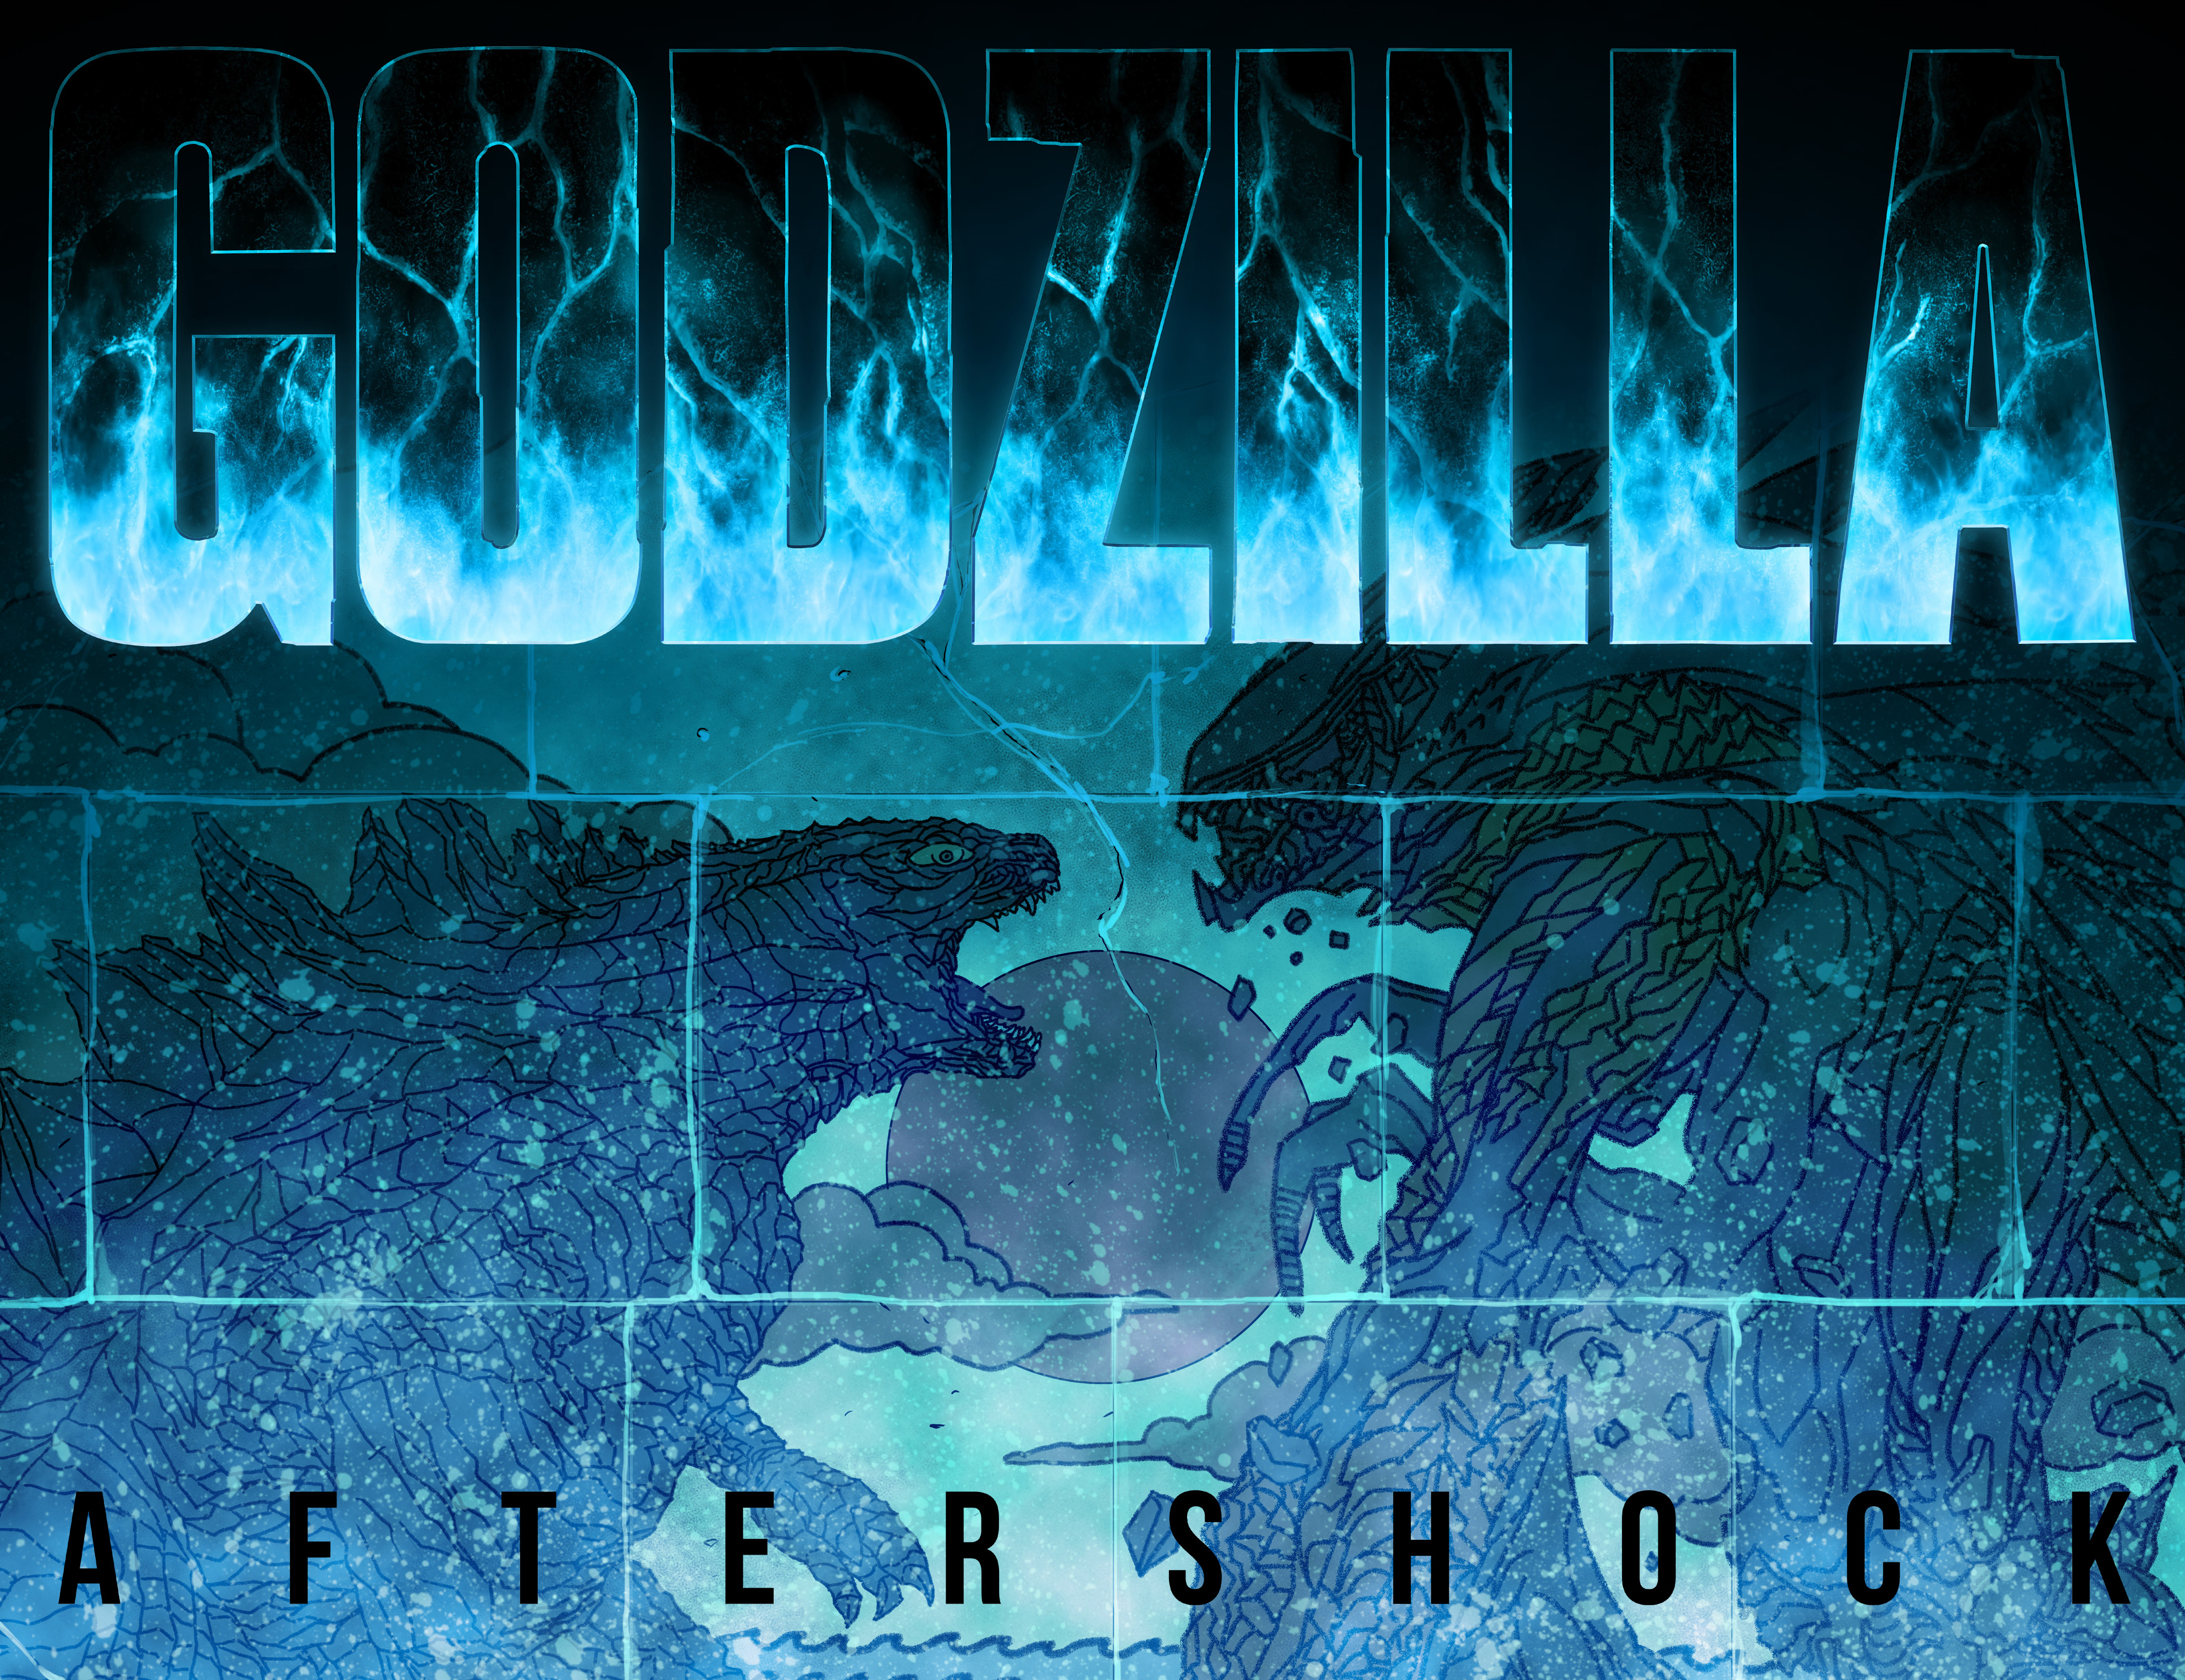 Read online Godzilla: Aftershock comic -  Issue # TPB - 4